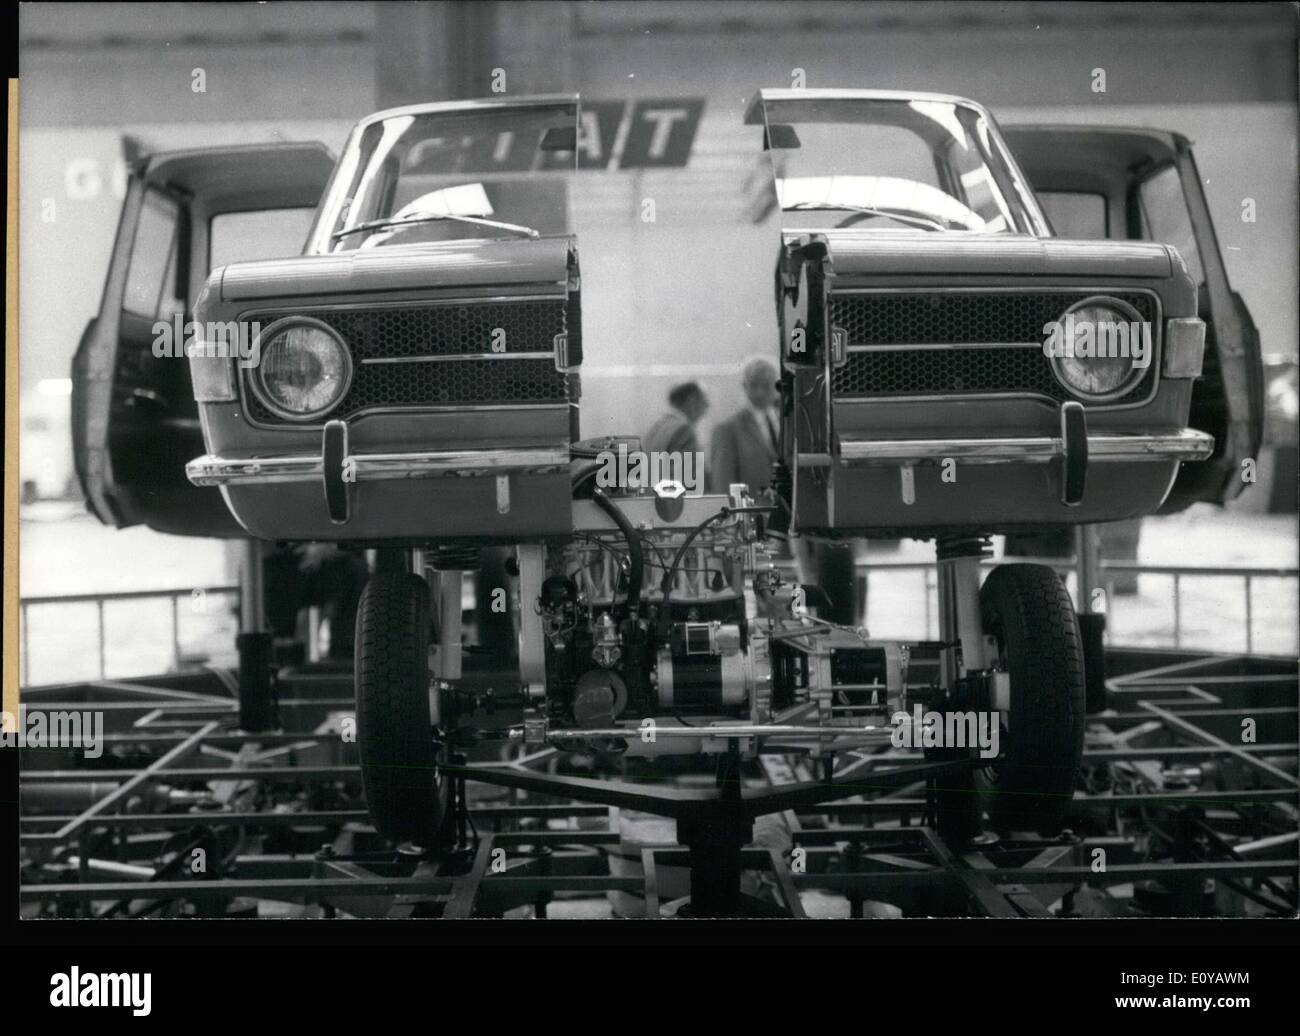 Septembre 21, 1969 - Cette Fiat 128 est coupée en deux, démontée comme un puzzle. Il pourrait être vu à l'exposition automobile internationale de 1969 à Francfort. Il a été divisé en quatre pièces : le corps, l'essieu avant, moteur, et l'essieu arrière, et mettre sur un mécanisme complexe qu'il fit tourner si on pouvait voir diverses pièces. La voiture était de Turin. Banque D'Images